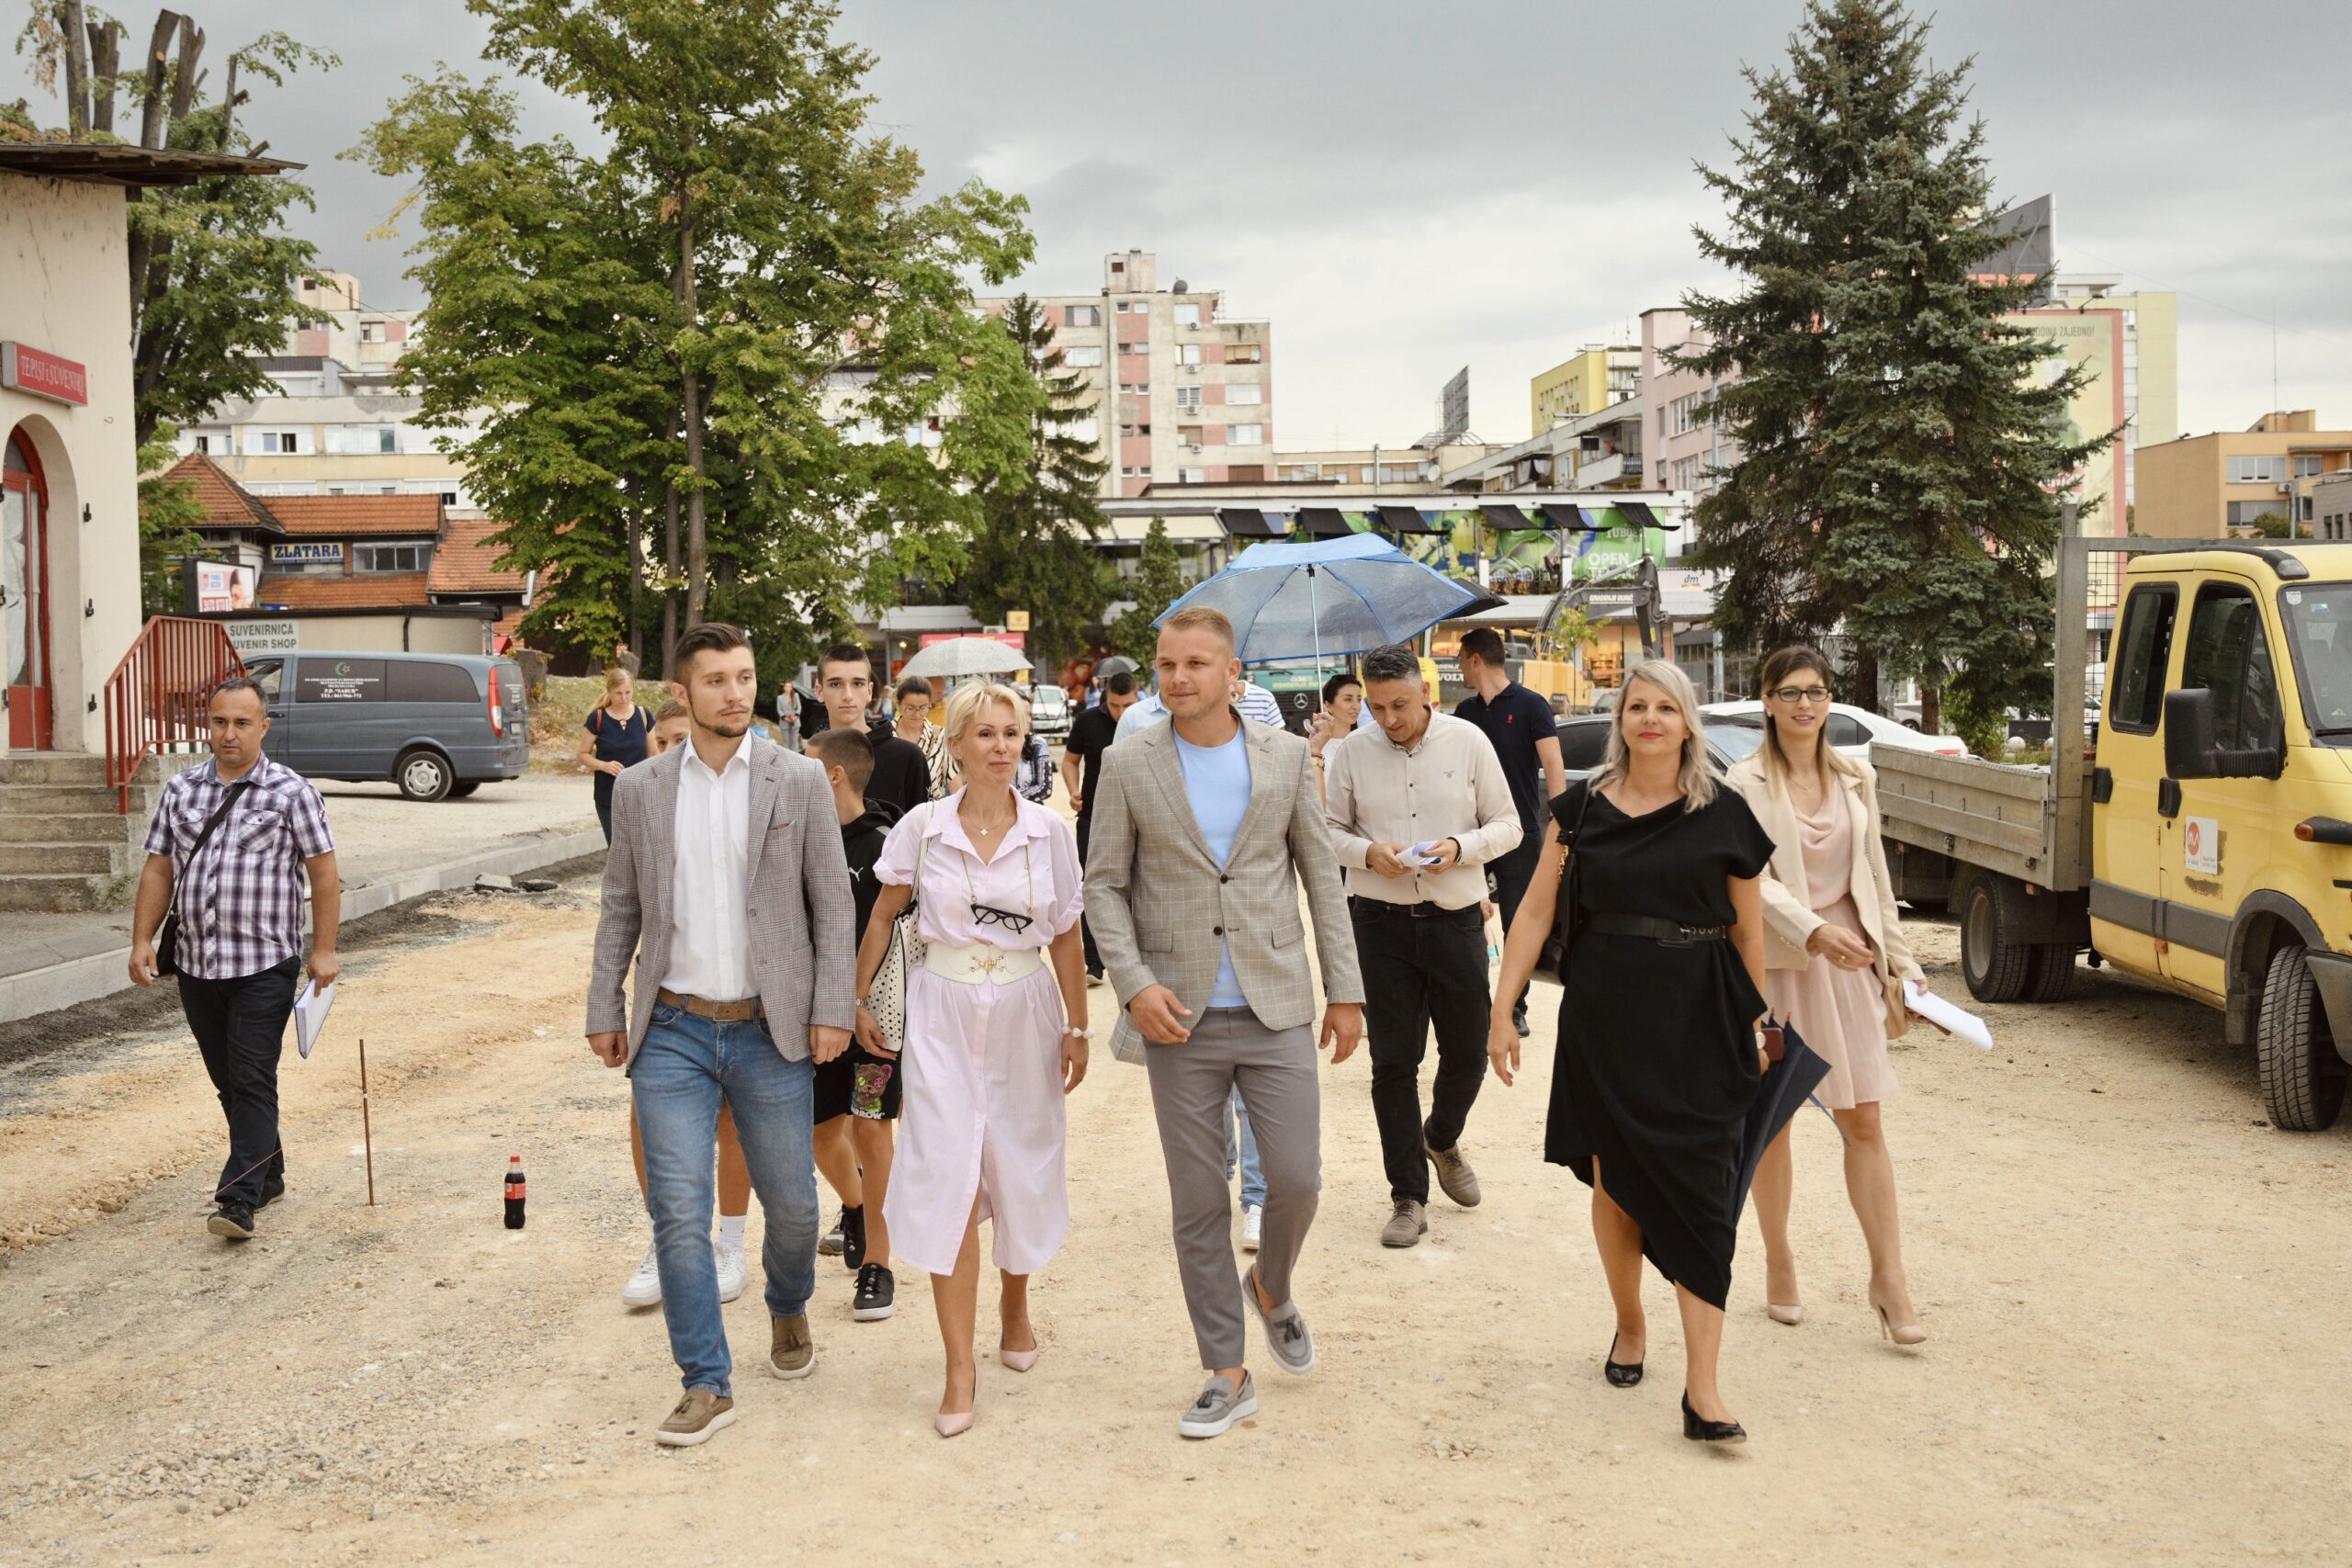 Gradonačelnik obišao radove na novoj kružnoj raskrsnici: Banja Luka ulazi u novu epohu svog urbanog razvoja